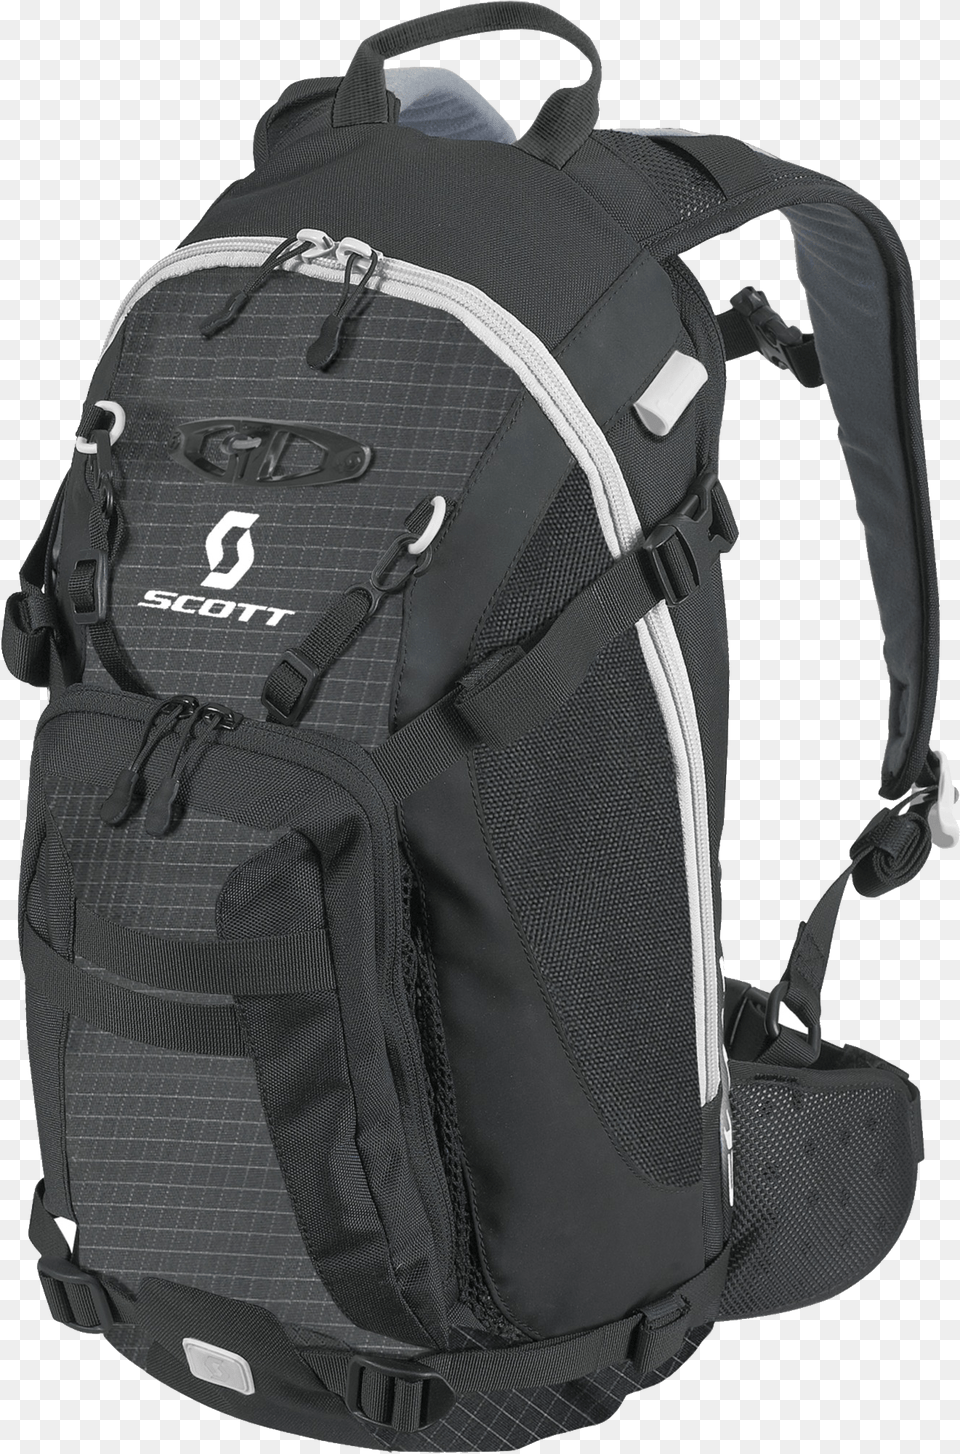 Scott Black Backpack Hiking Backpack Transparent Background, Bag Free Png Download